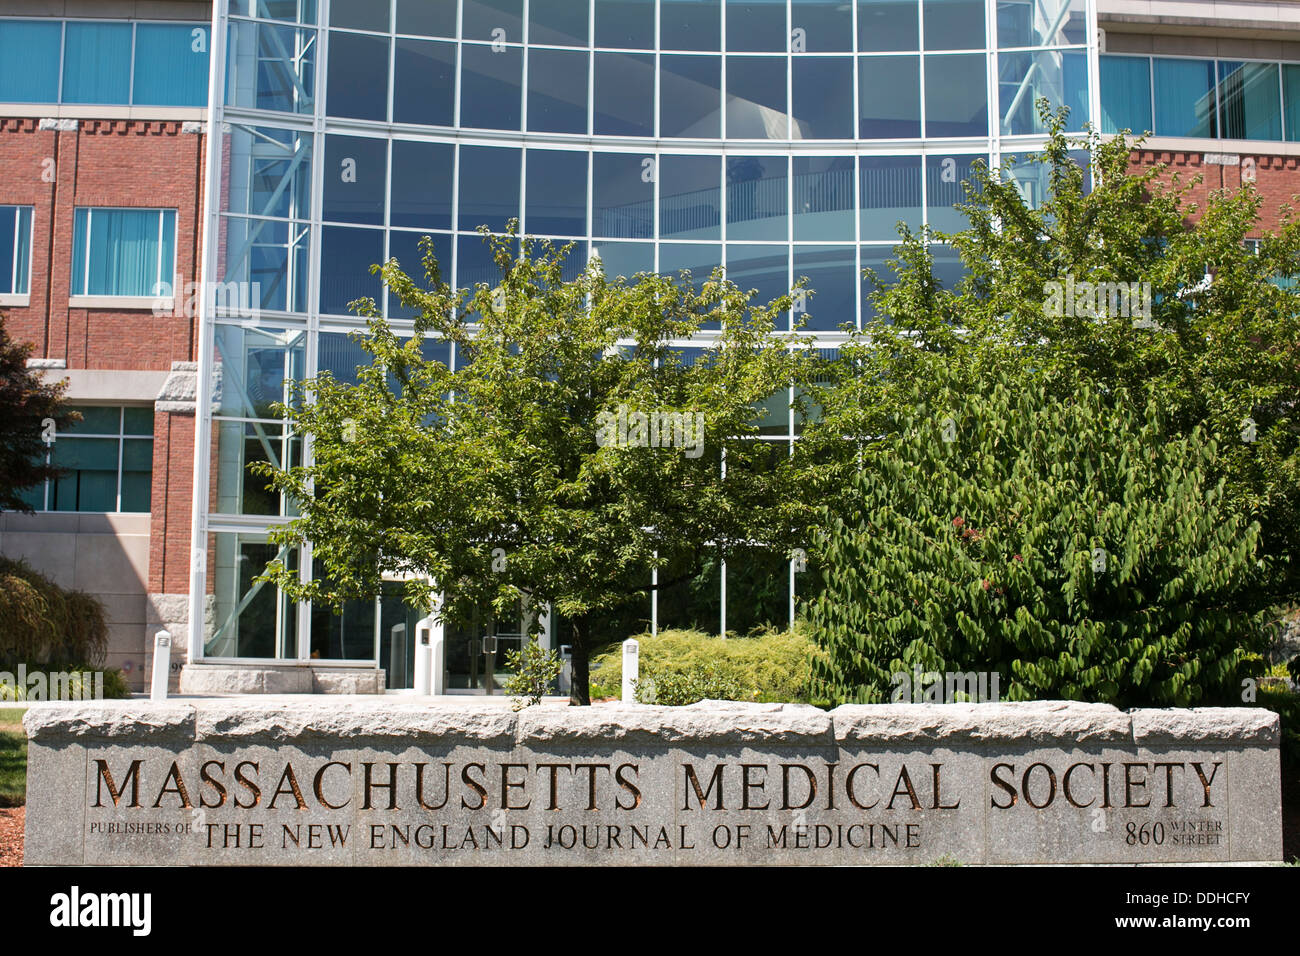 Le siège de la Massachusetts Medical Society, l'éditeur du New England Journal of Medicine. Banque D'Images